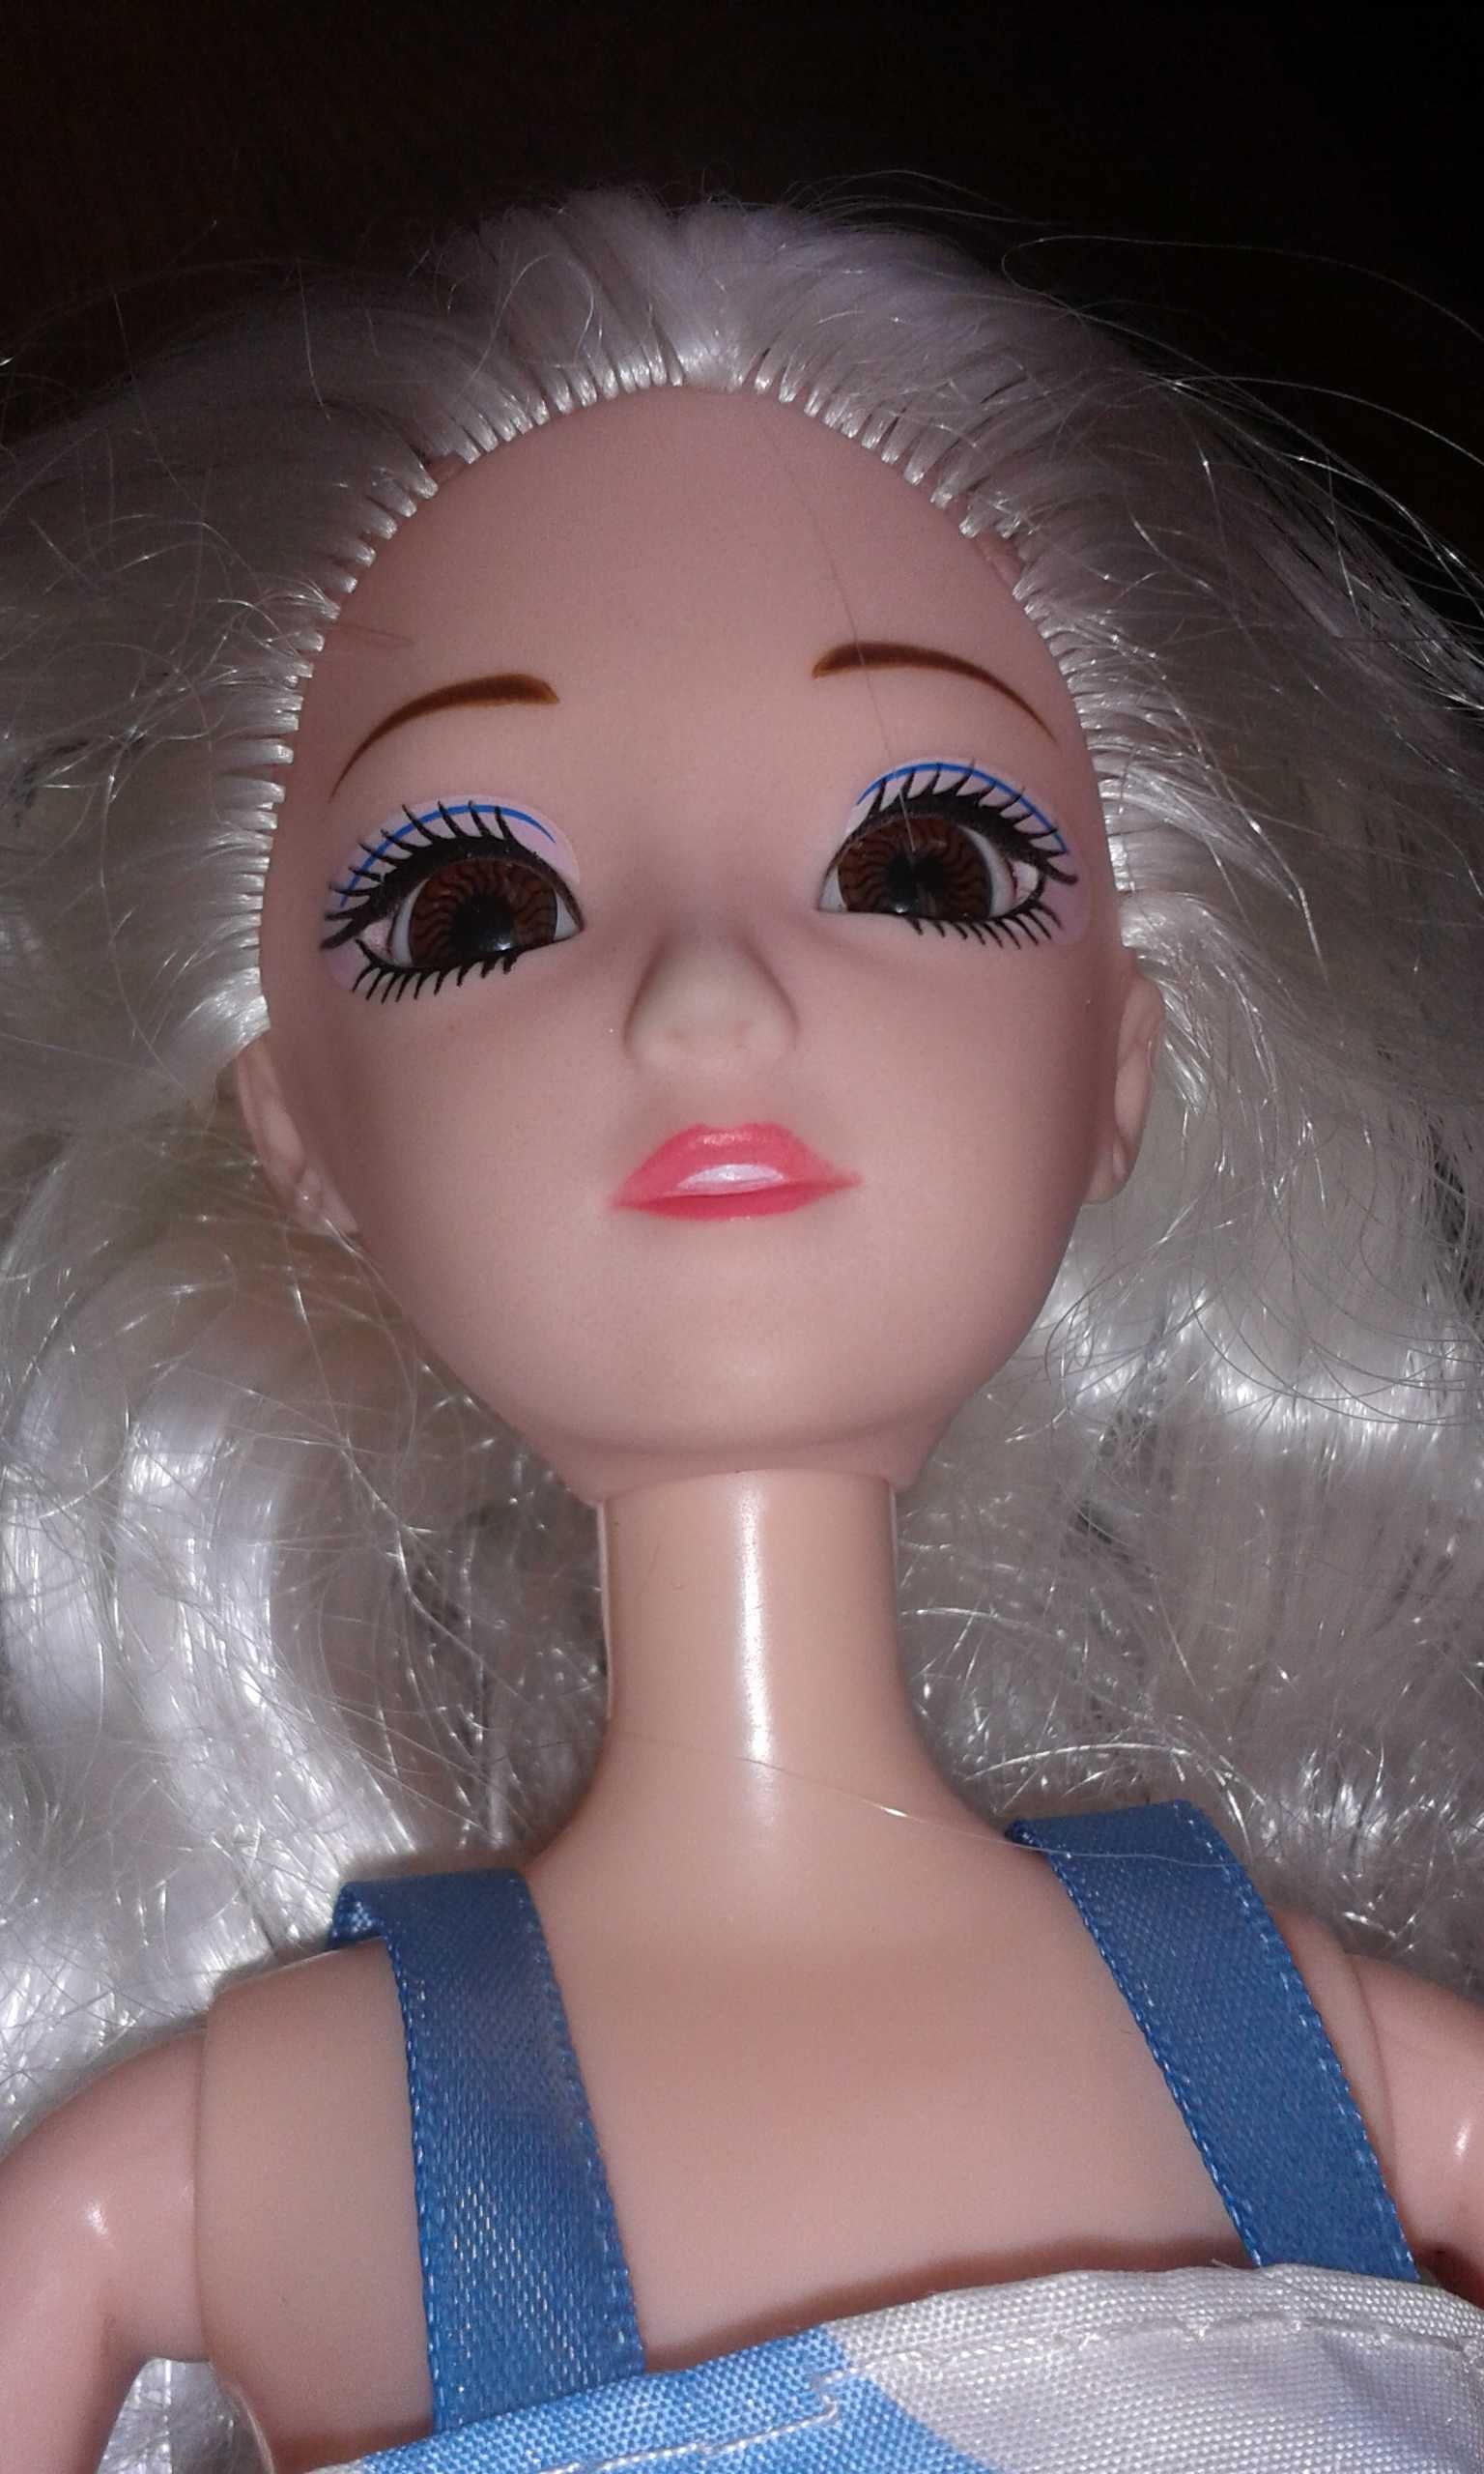 Lalka Barbie z ruszającymi rączkami i nóżkami